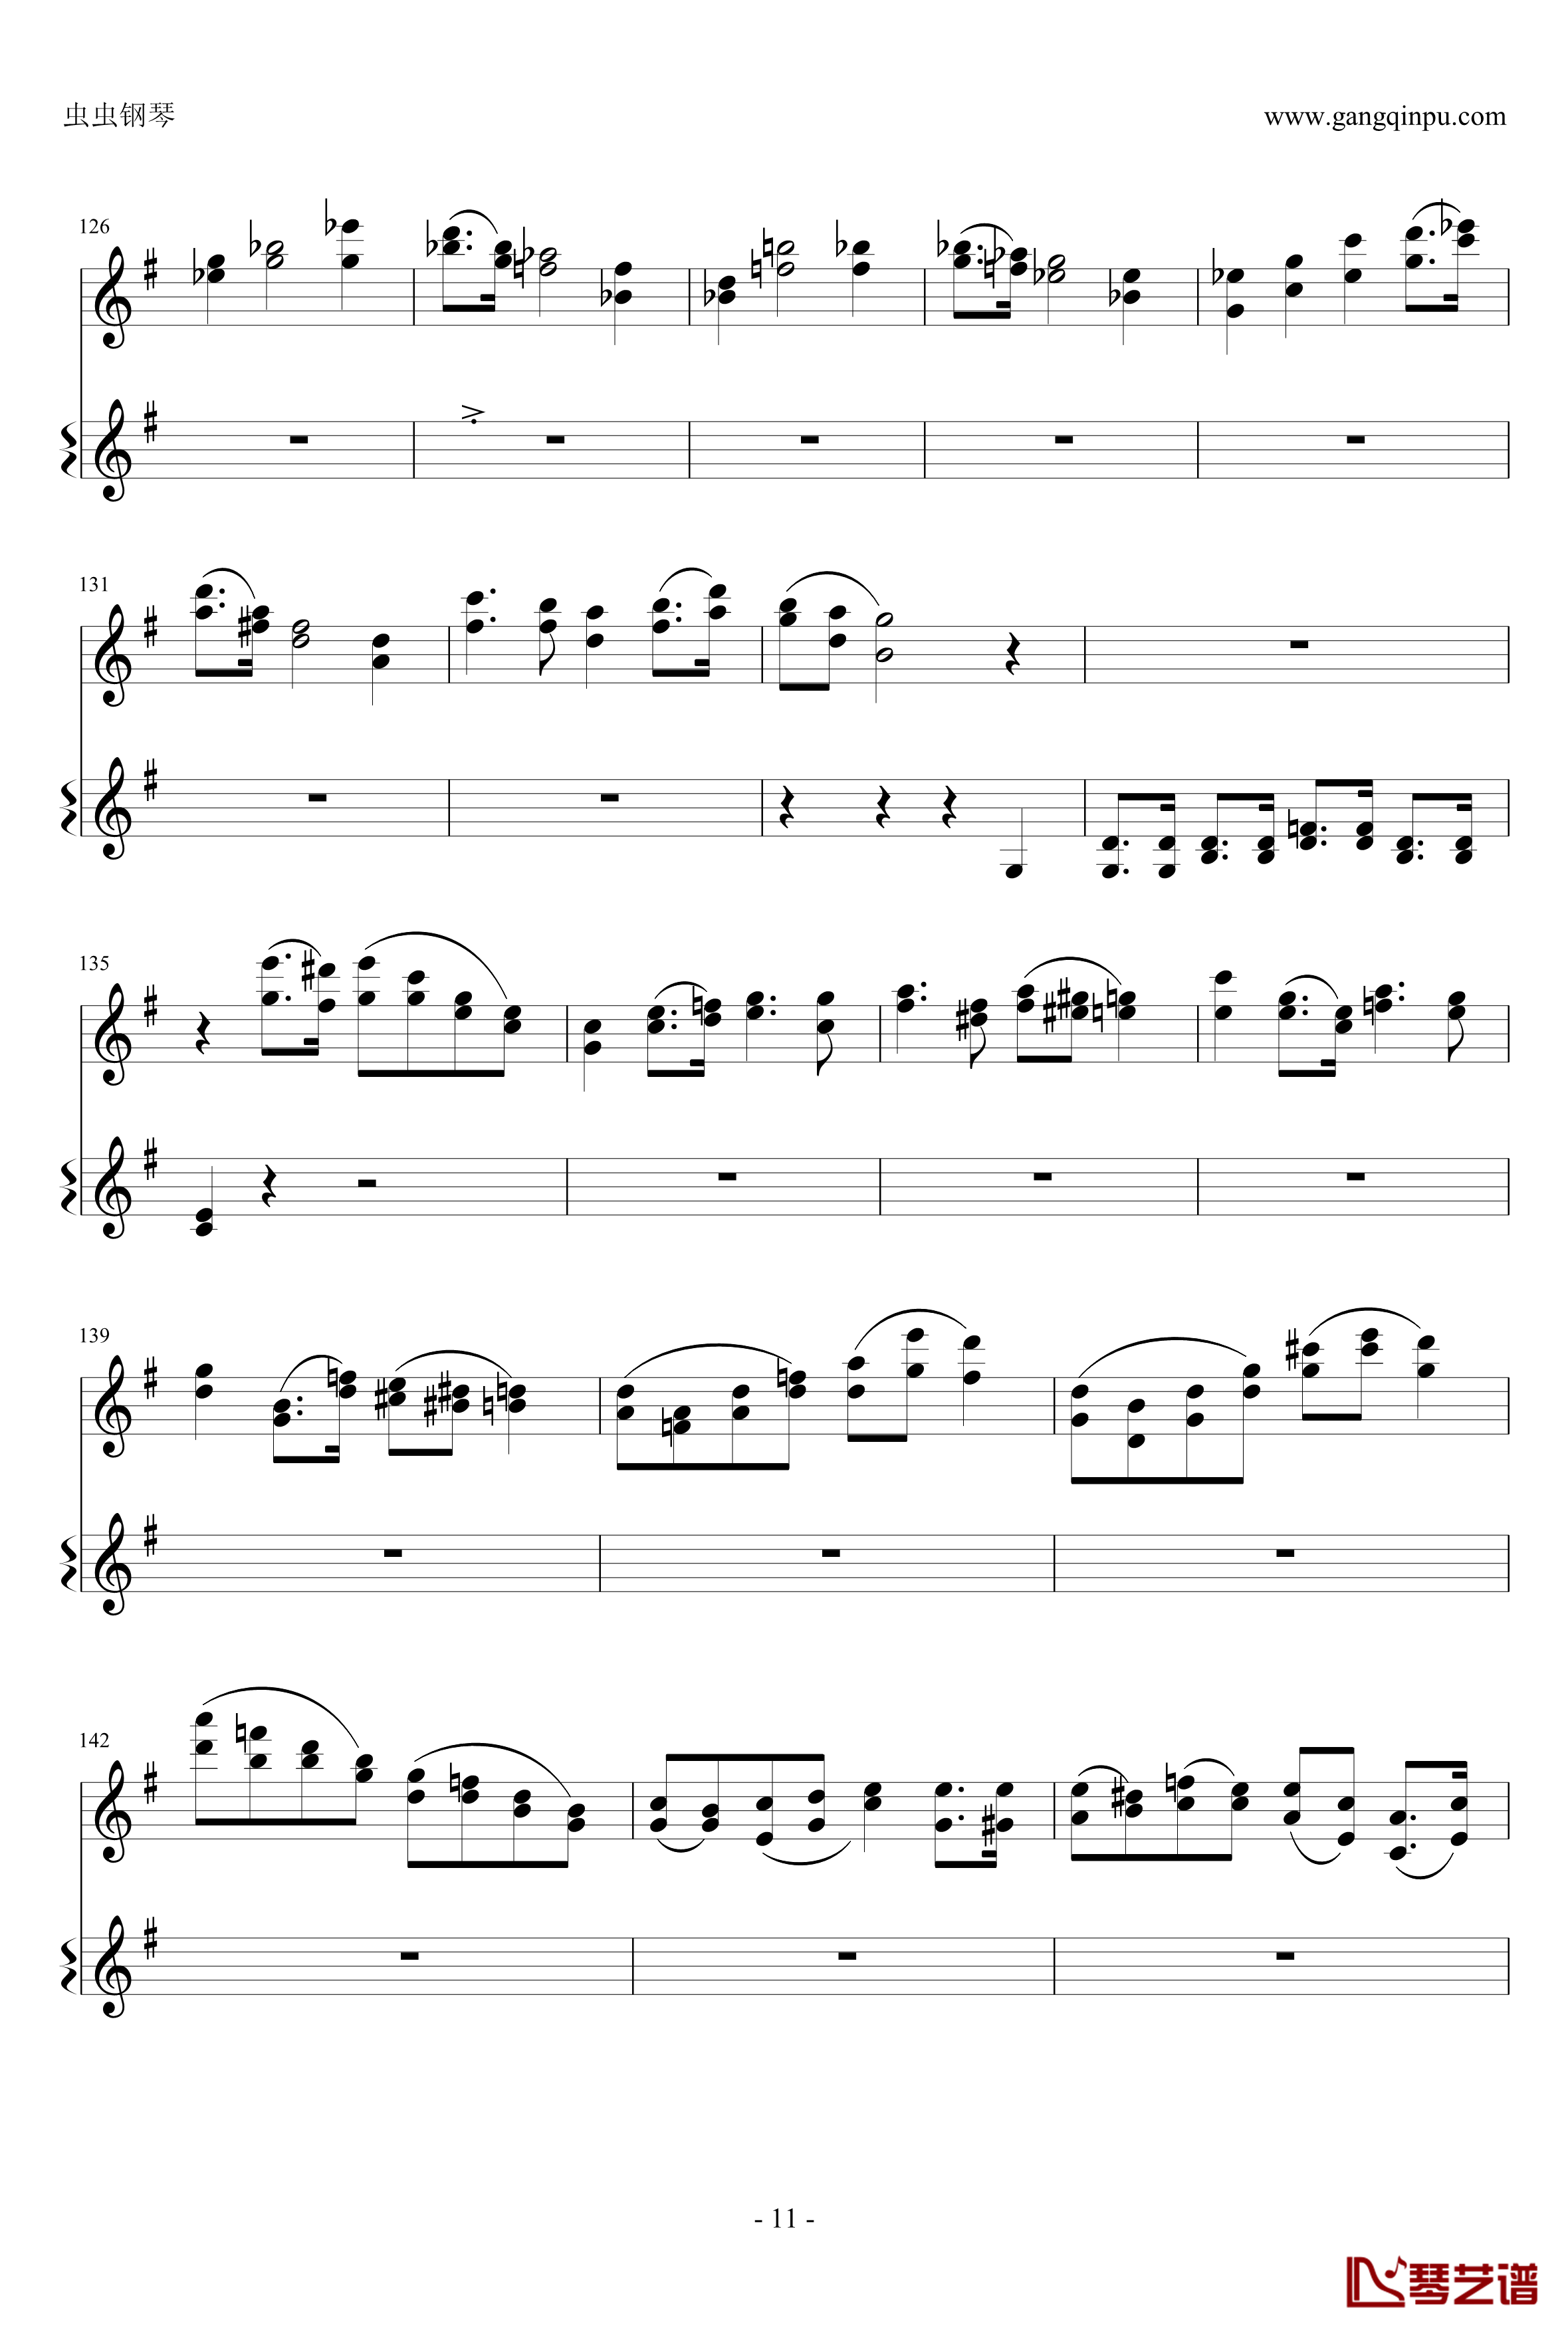 意大利国歌钢琴谱-变奏曲修改版-DXF11